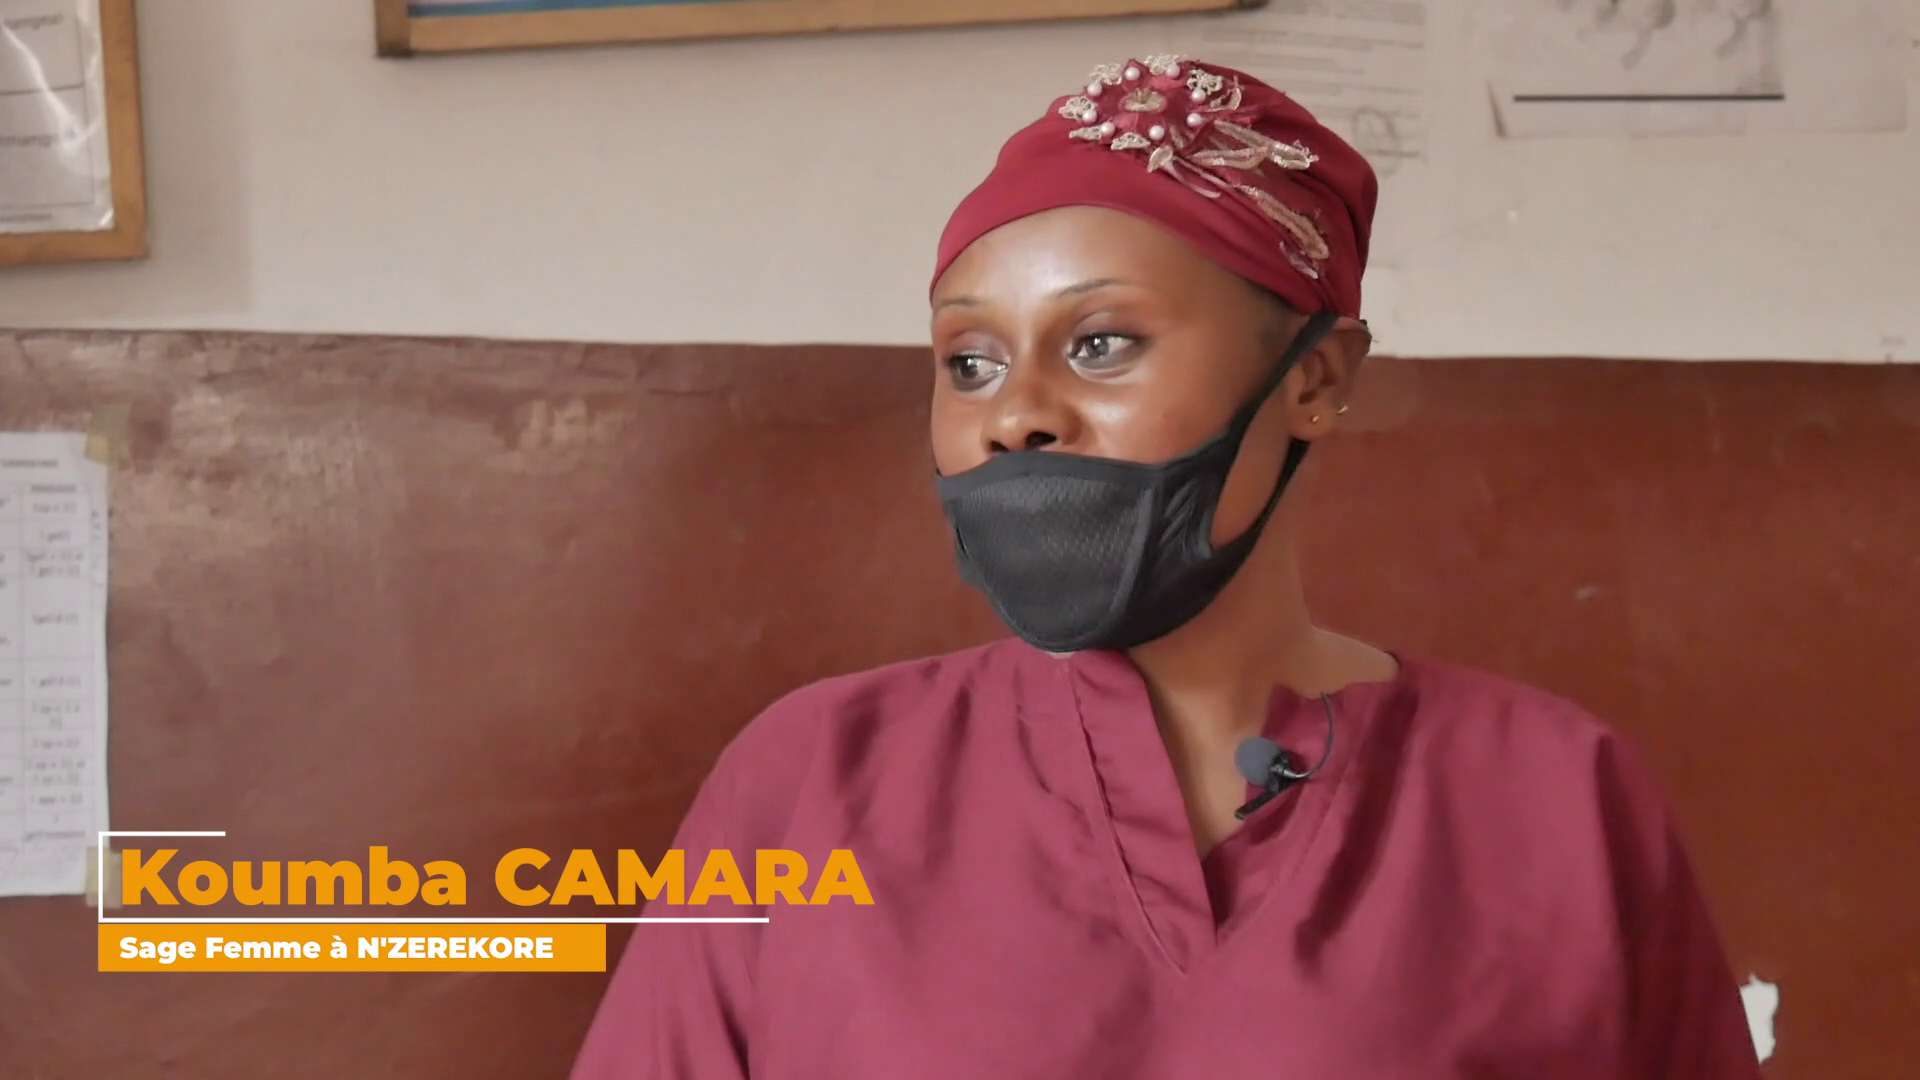 Koumba Camara sage-femme à l’Hôpital Régionale de N’Zérékoré s’engage pour la continuité des services de santé maternelle